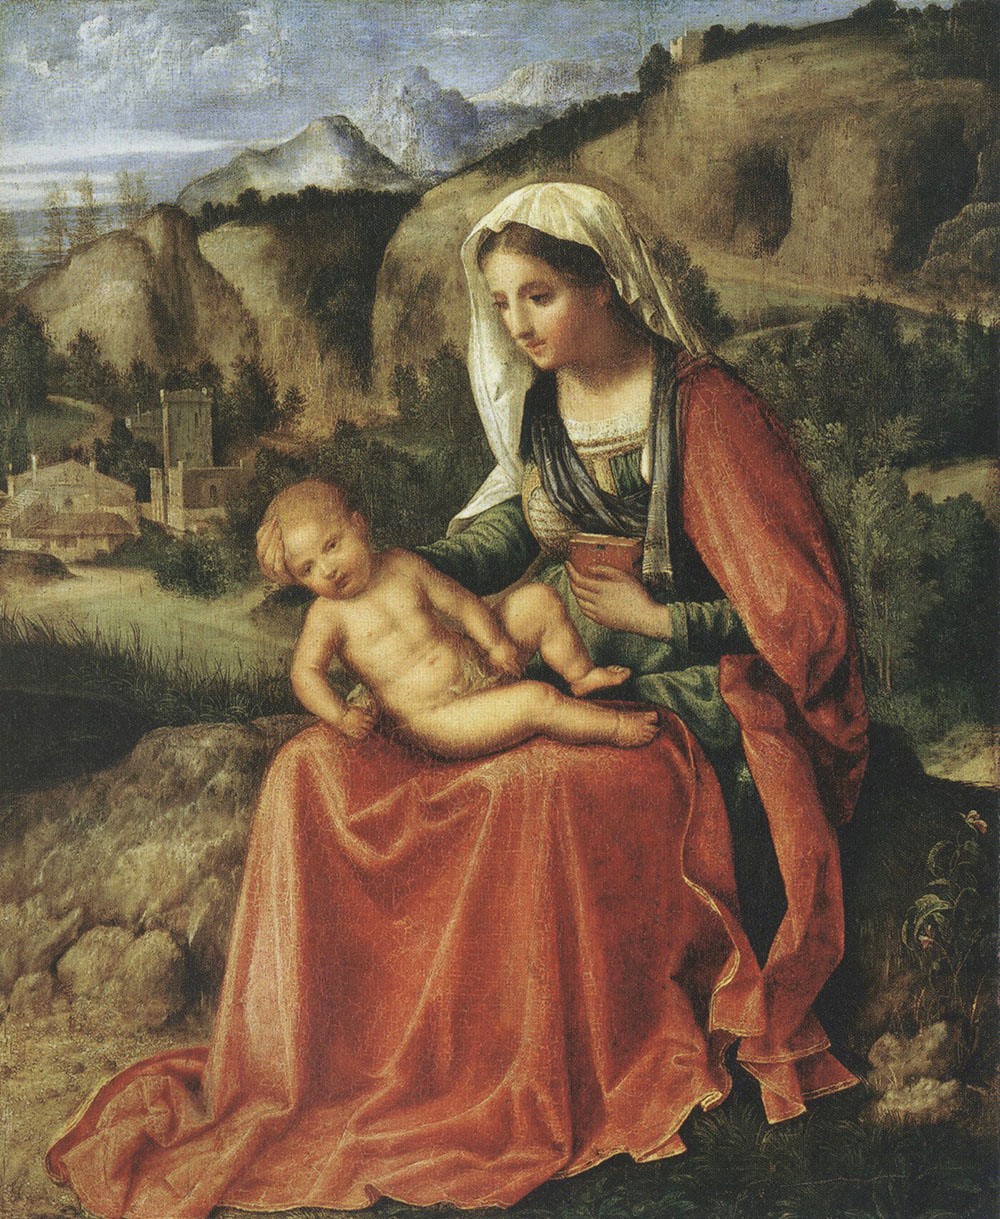 Джорджоне (Джорджо Барбарелли да Кастельфранко)? "Мадонна с Младенцем в пейзаже".